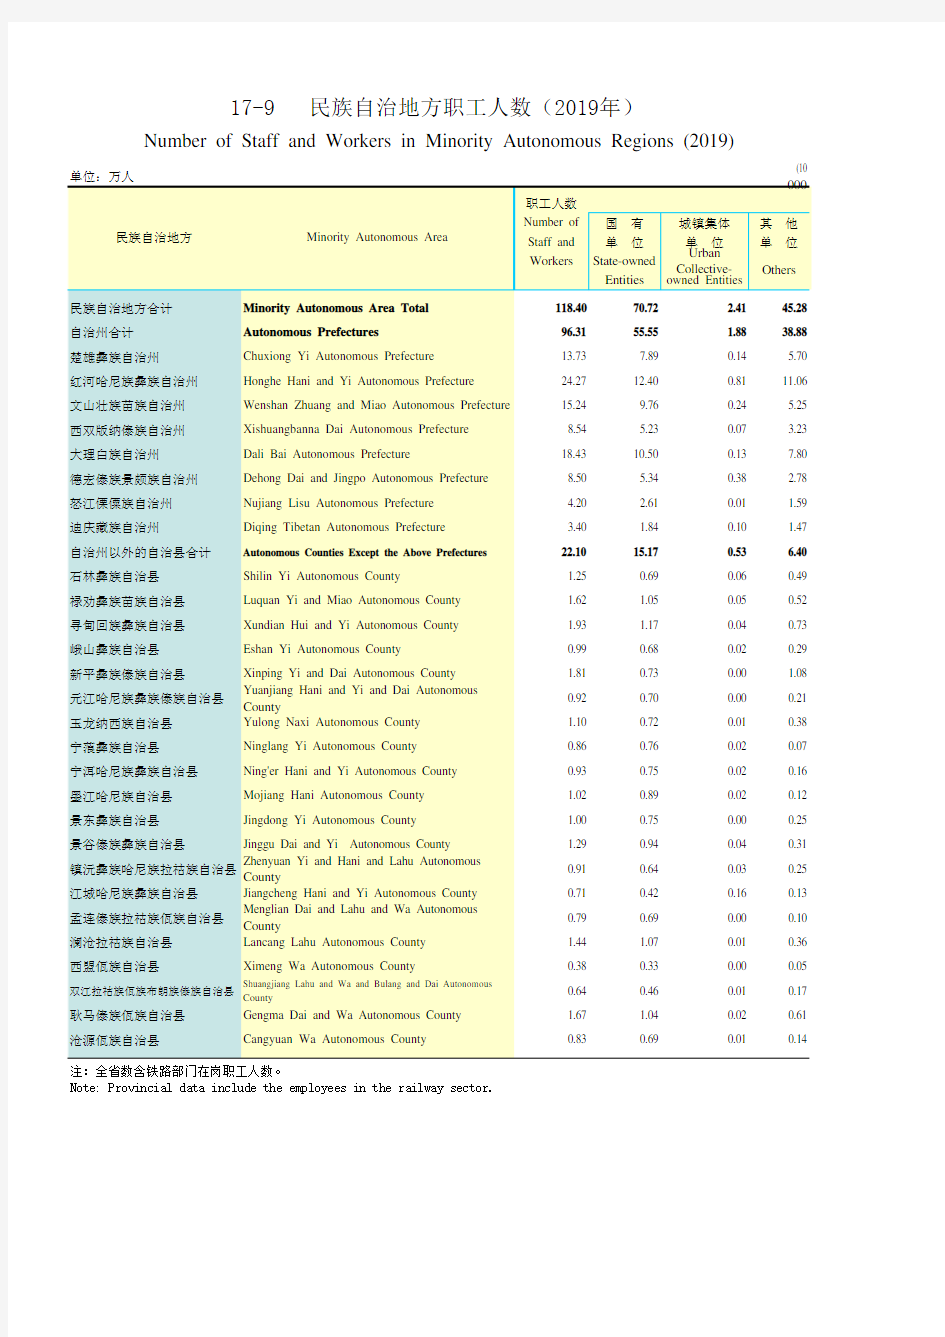 云南统计年鉴2020社会经济发展指标：民族自治地方职工人数(2019年)